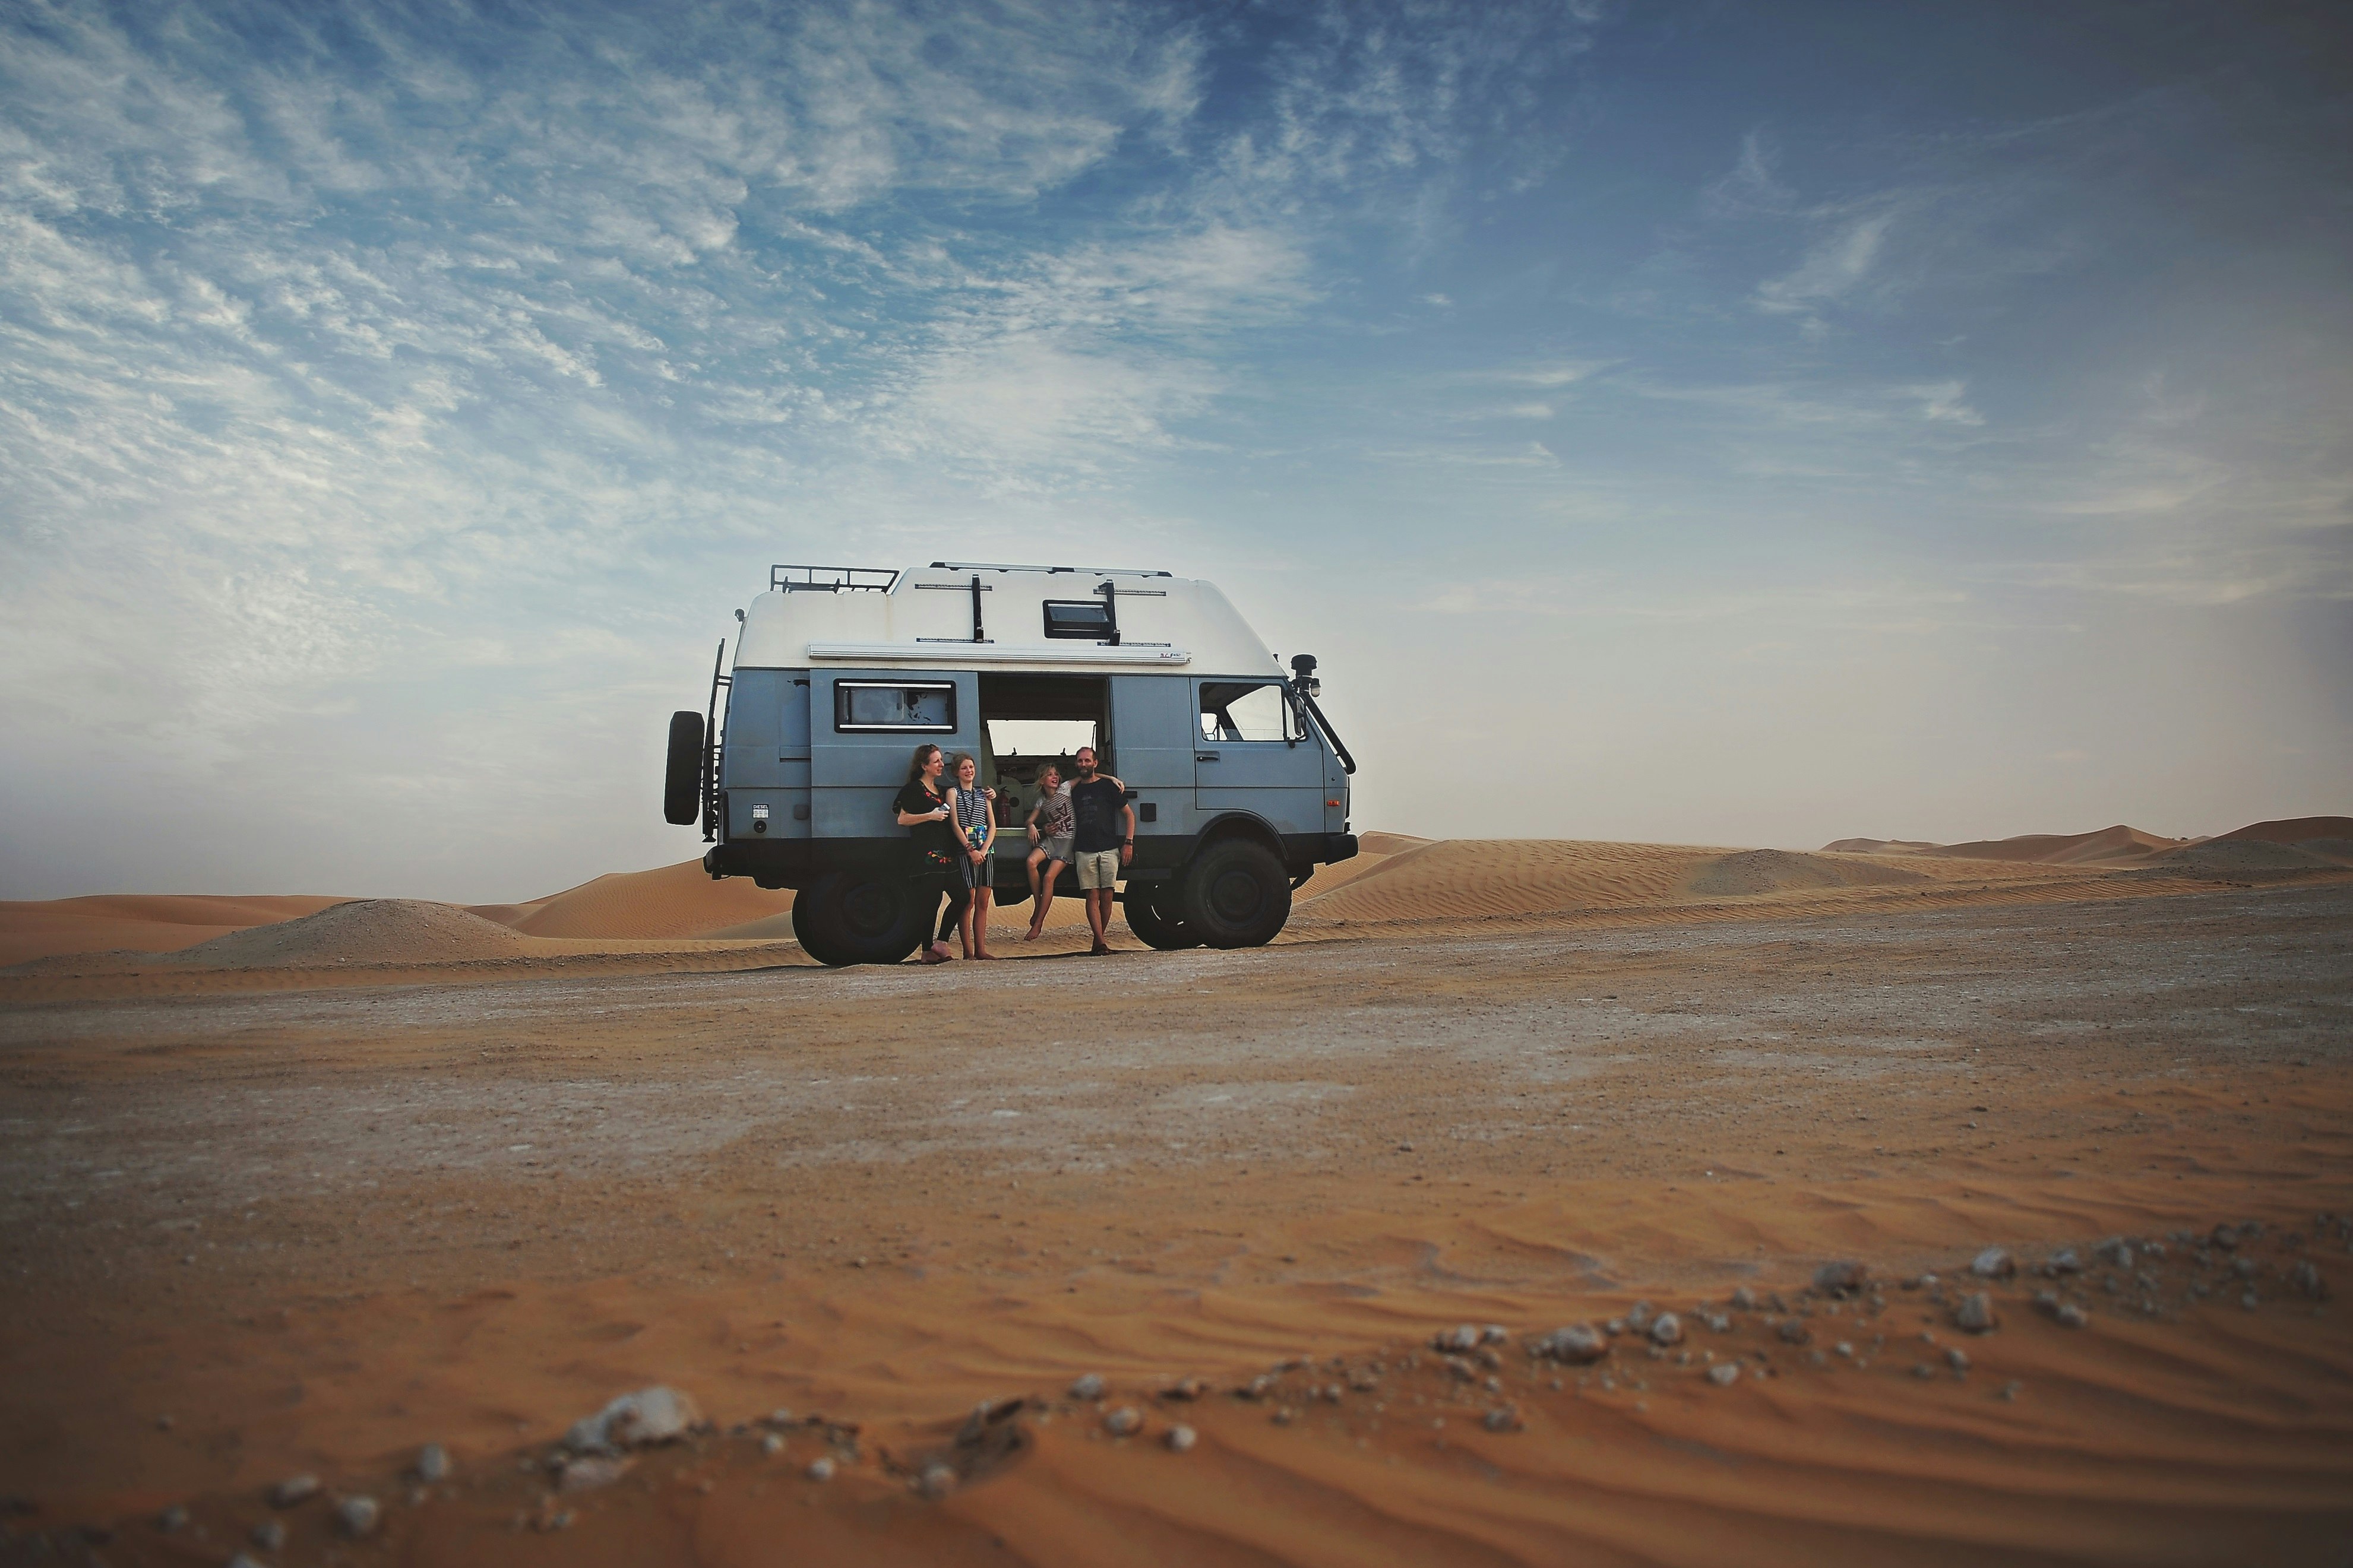 The Larmour family pose outside their van in the desert